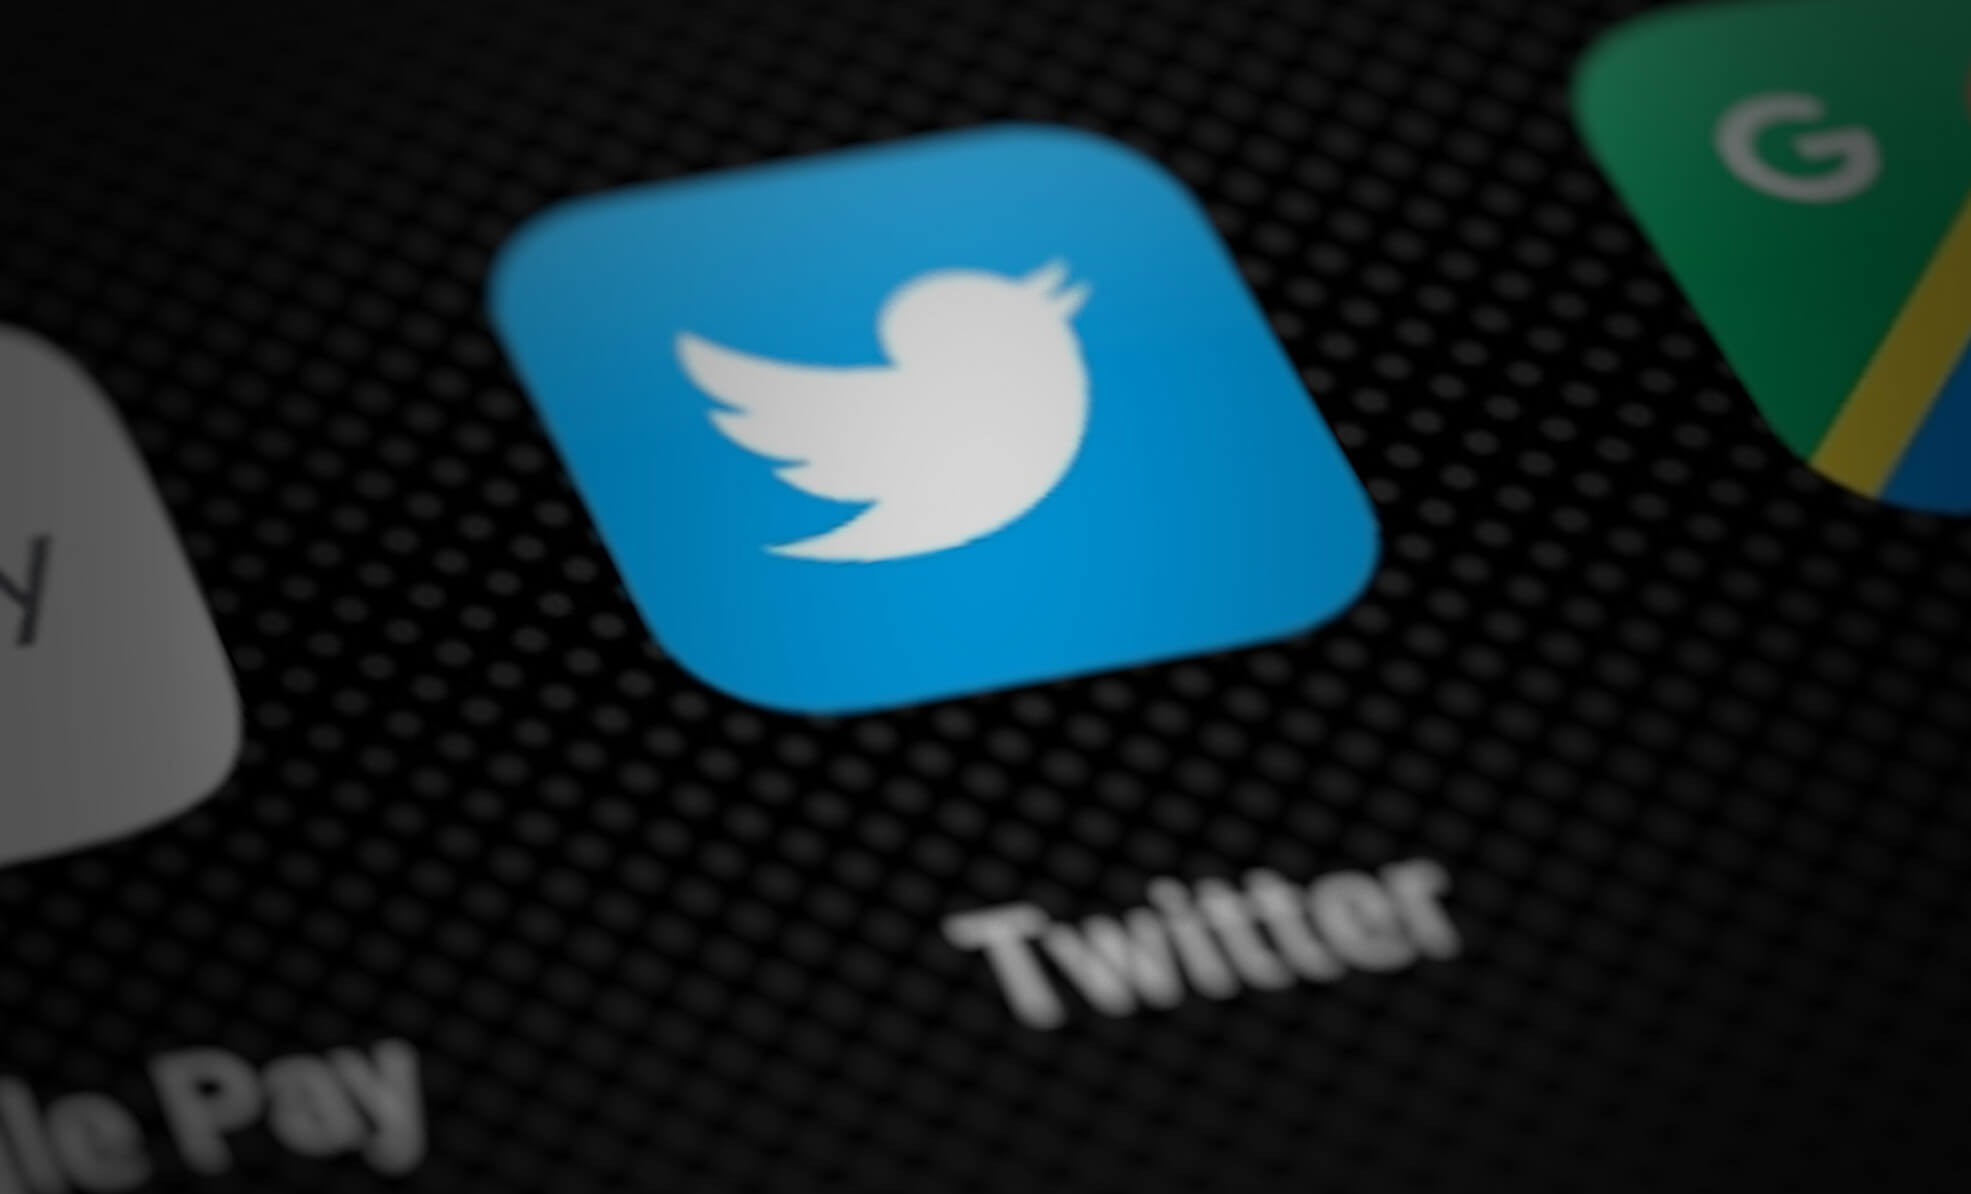 لم يعد موقع Twitter “عالي الخطورة” بعد تعيين الرئيس التنفيذي الجديد: أفضل وكالة إعلامية